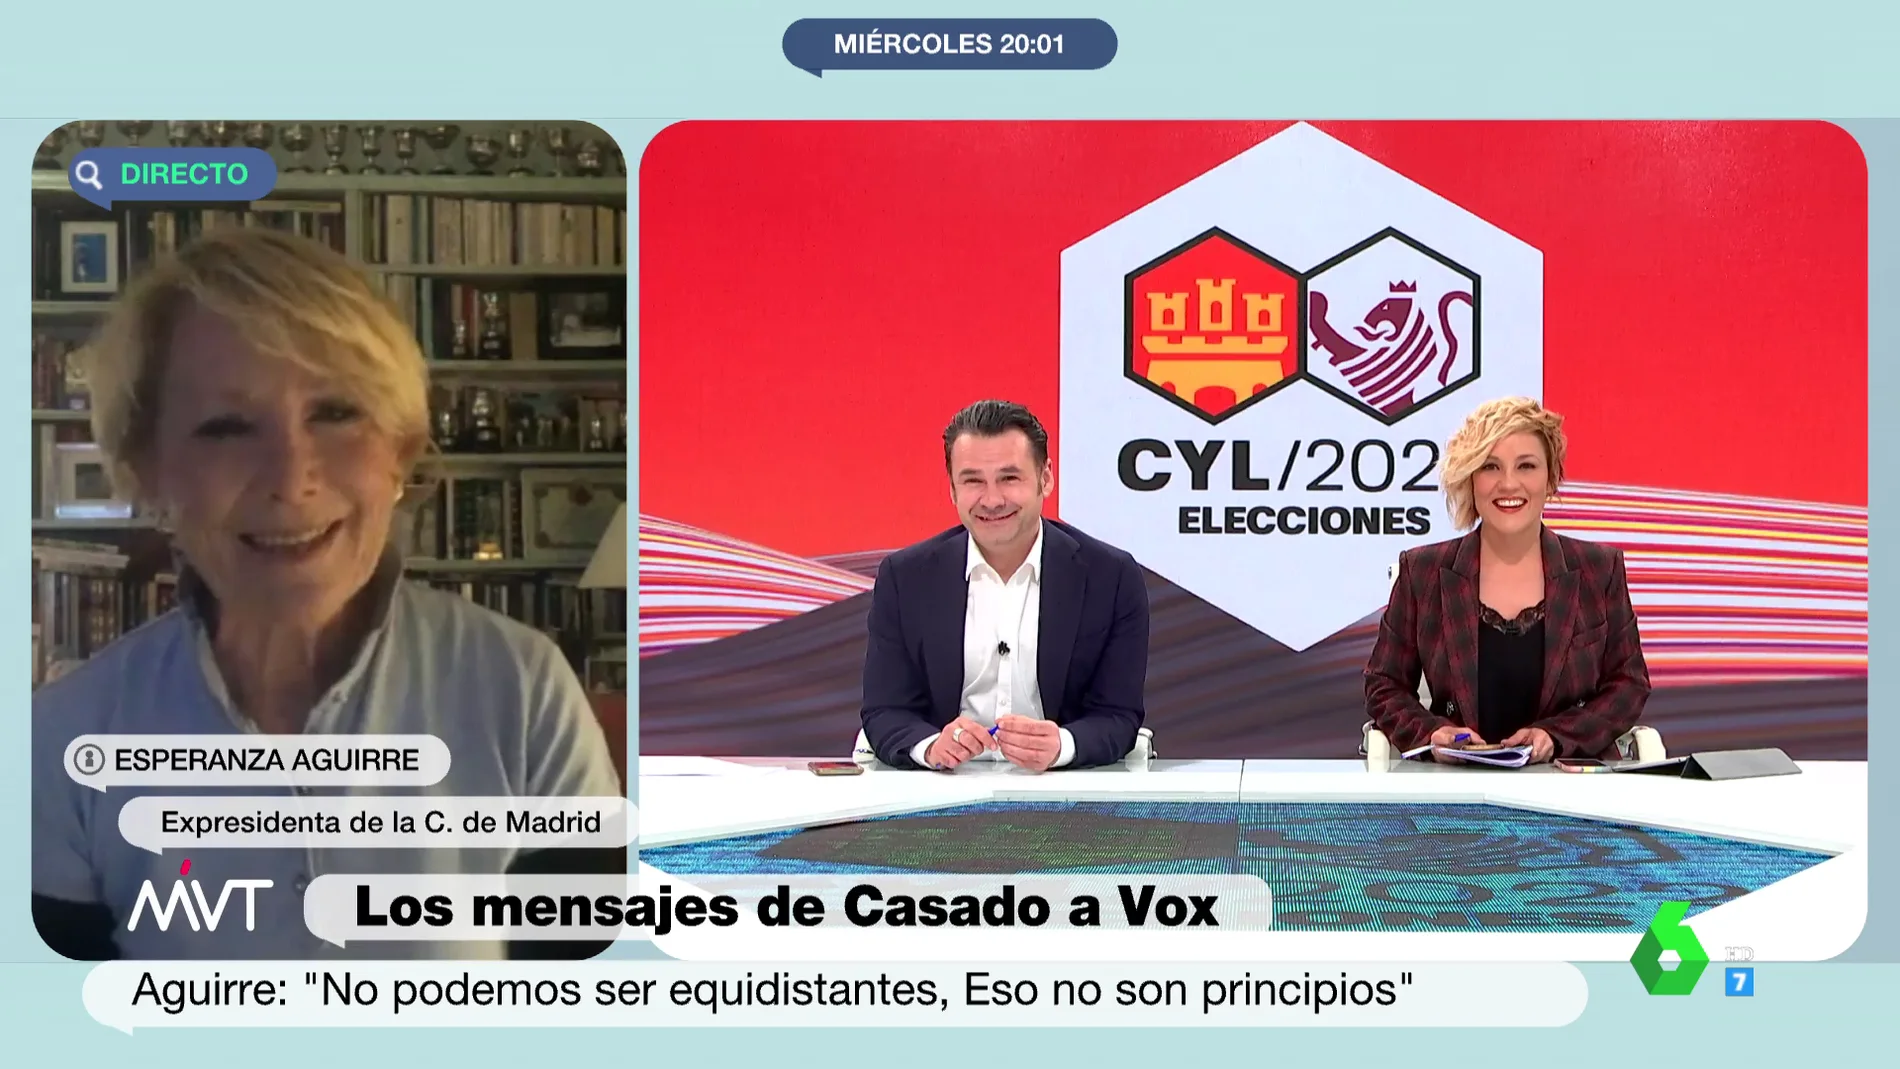 Esperanza Aguirre reitera que hay "chiquilicuatres" en el PP: "Son jóvenes arrogantes y carentes de sensatez"